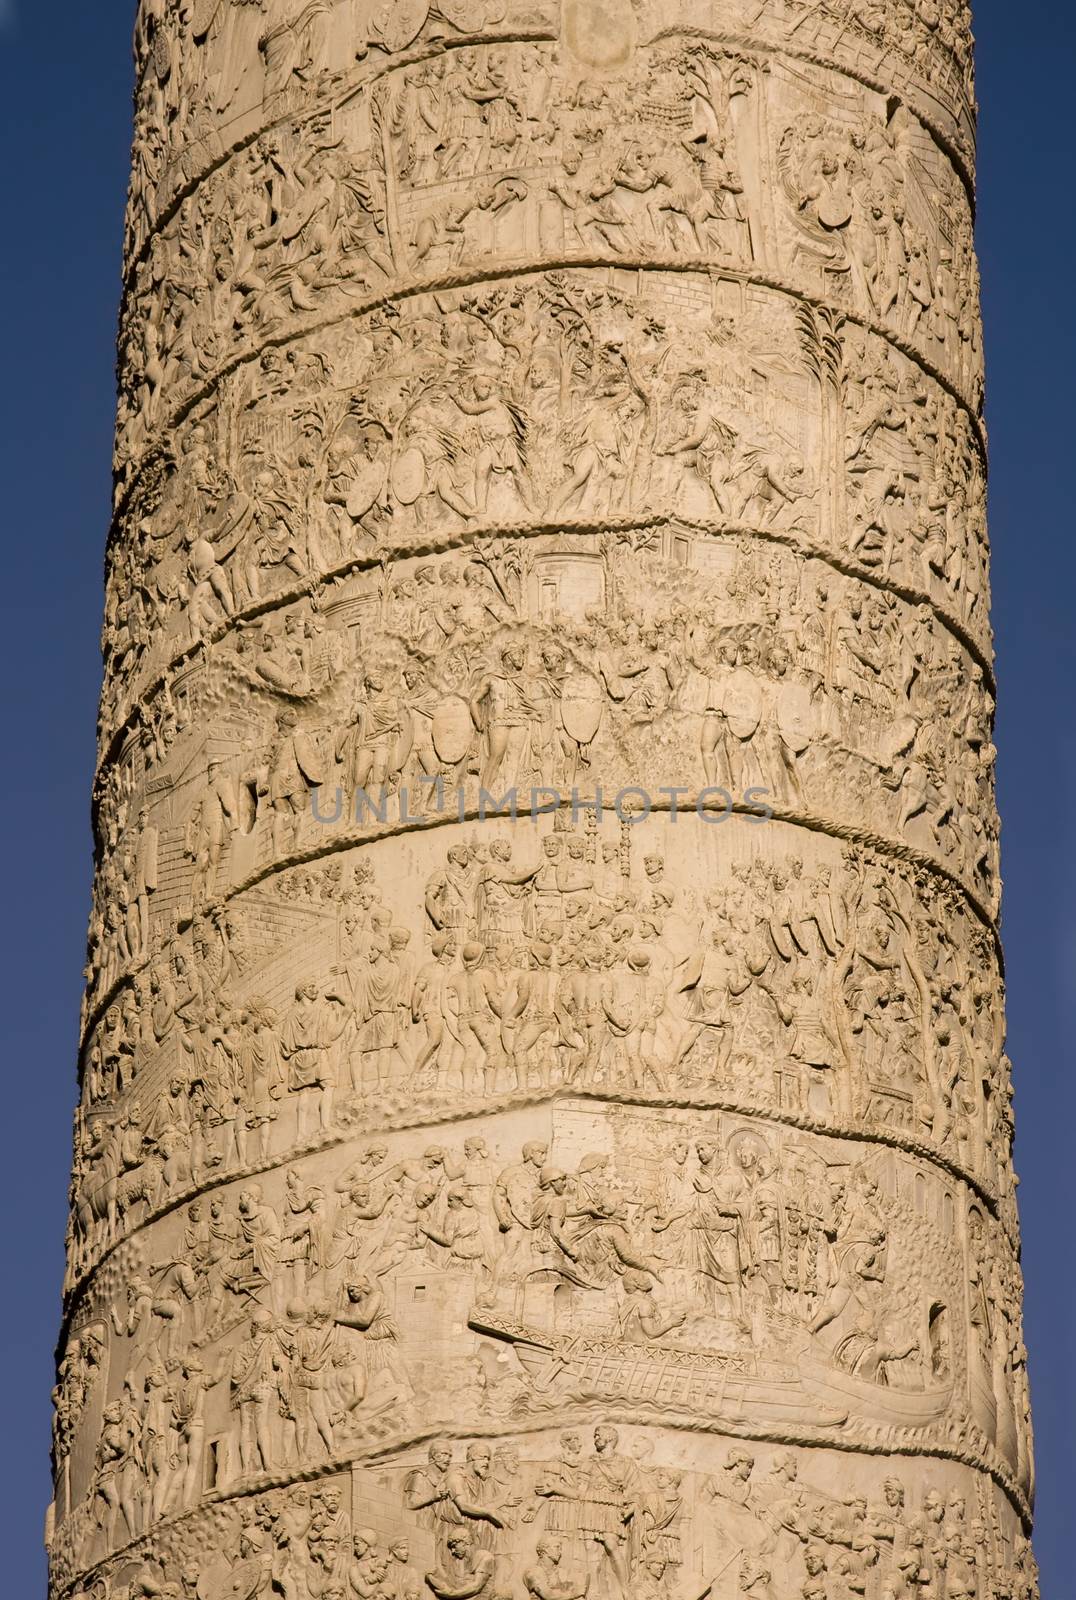 Trajan column located in Trajan Forum in Rome by fotoecho